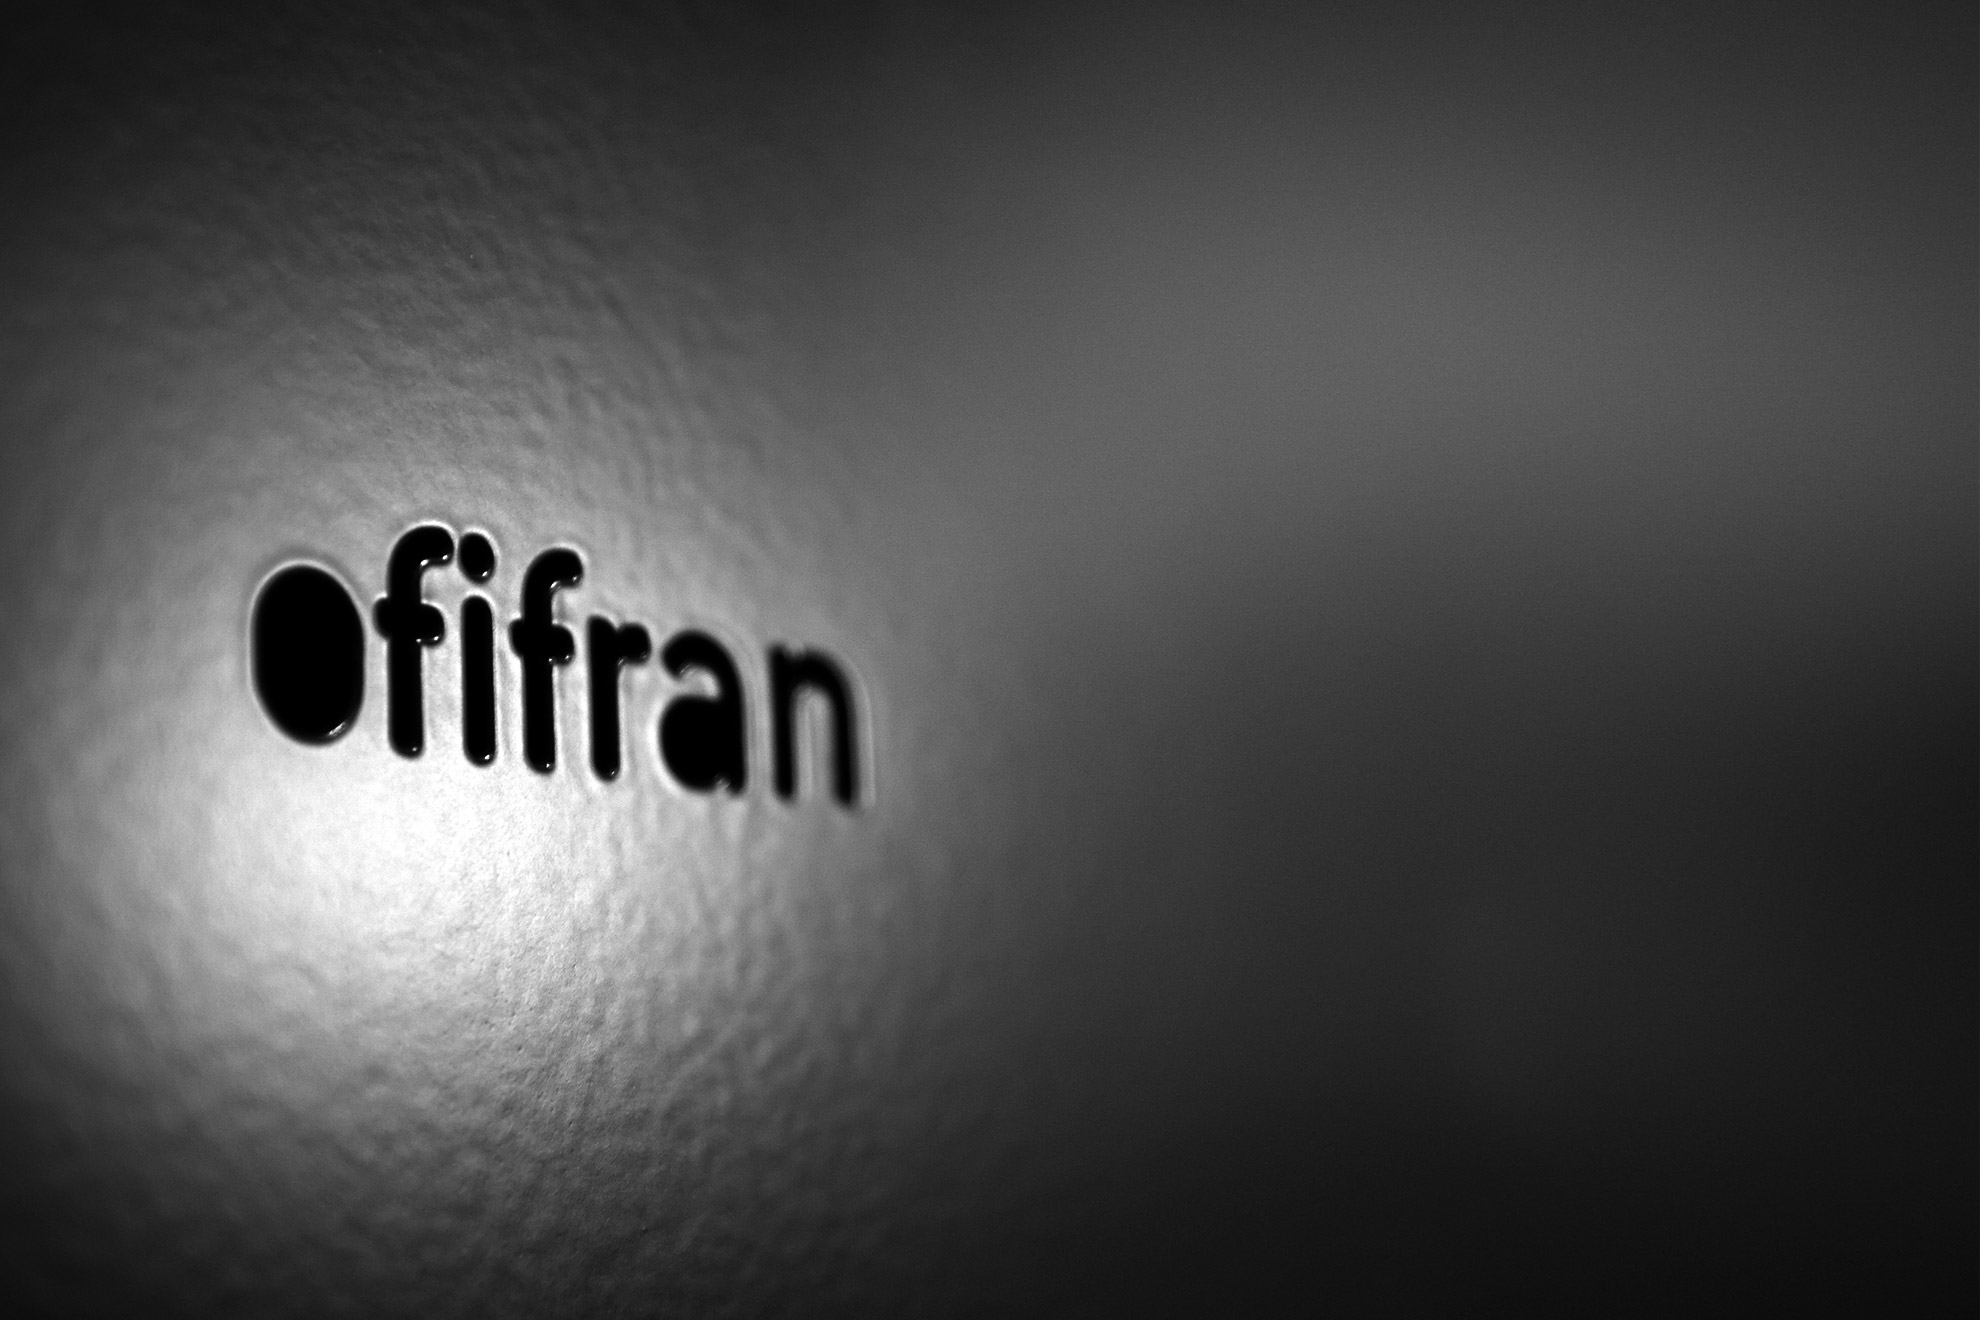 I+D Ofifran Studio